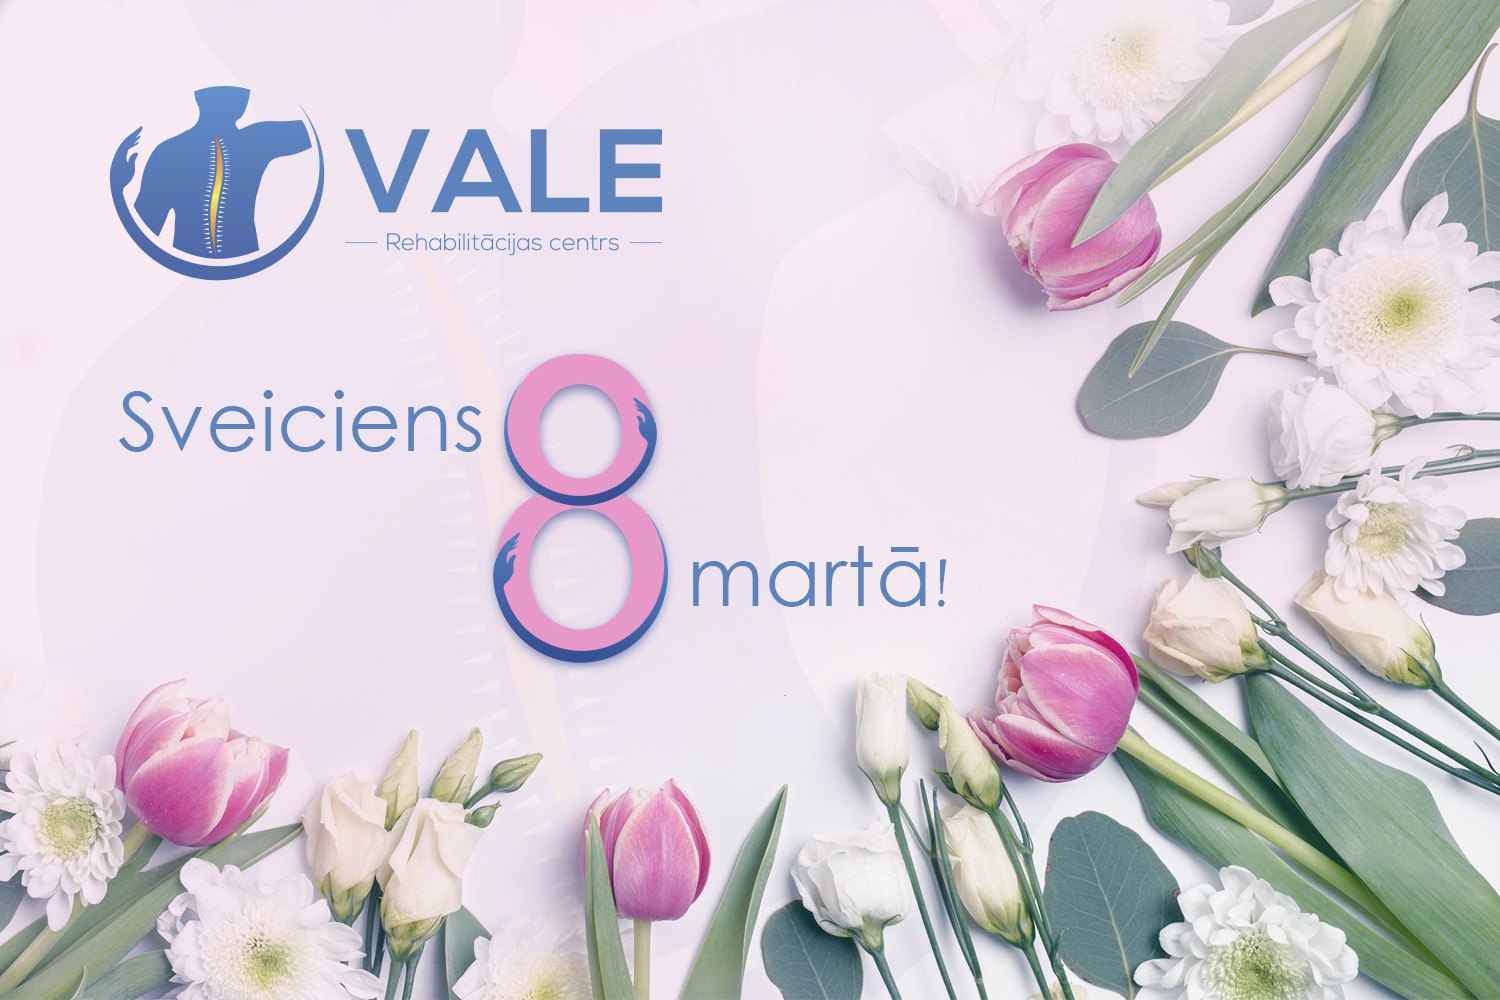 Кабинет физиотерапии ВАЛЕ поздравляет с праздником 8-м марта!